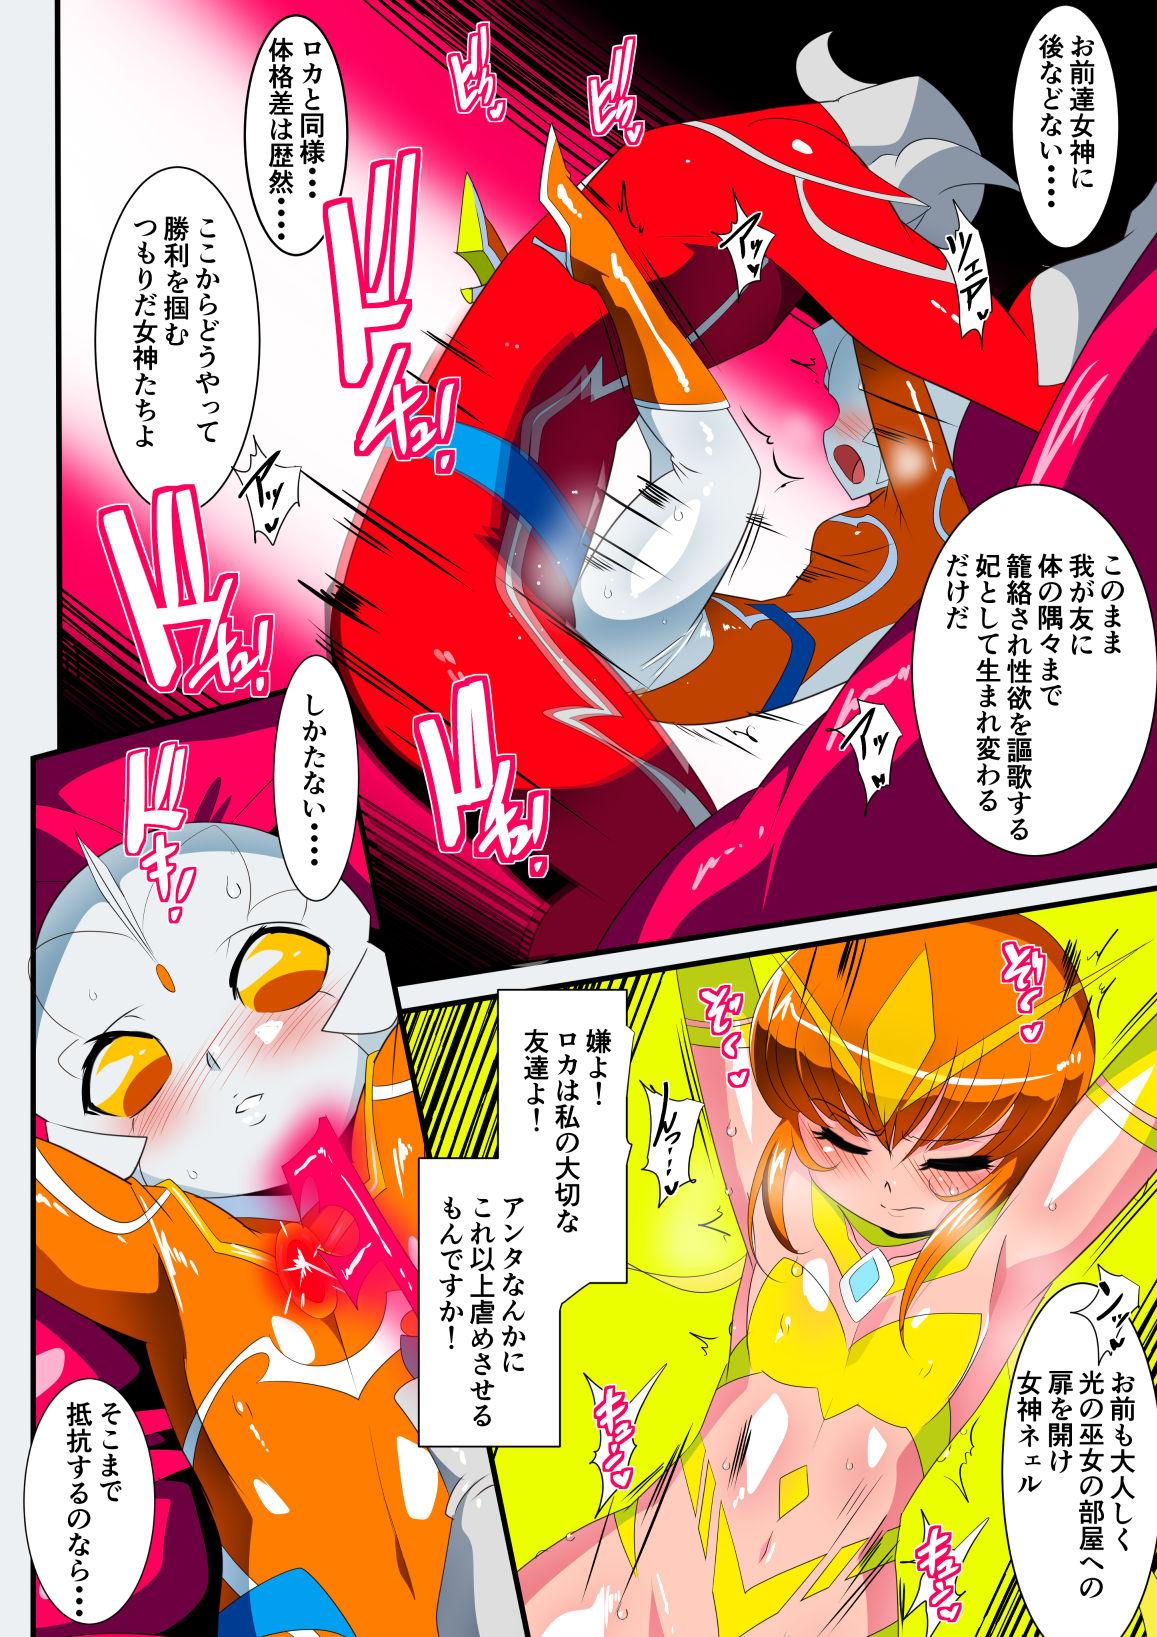 Foot Fetish Ginga no Megami Netise IX - Ultraman Footfetish - Page 6